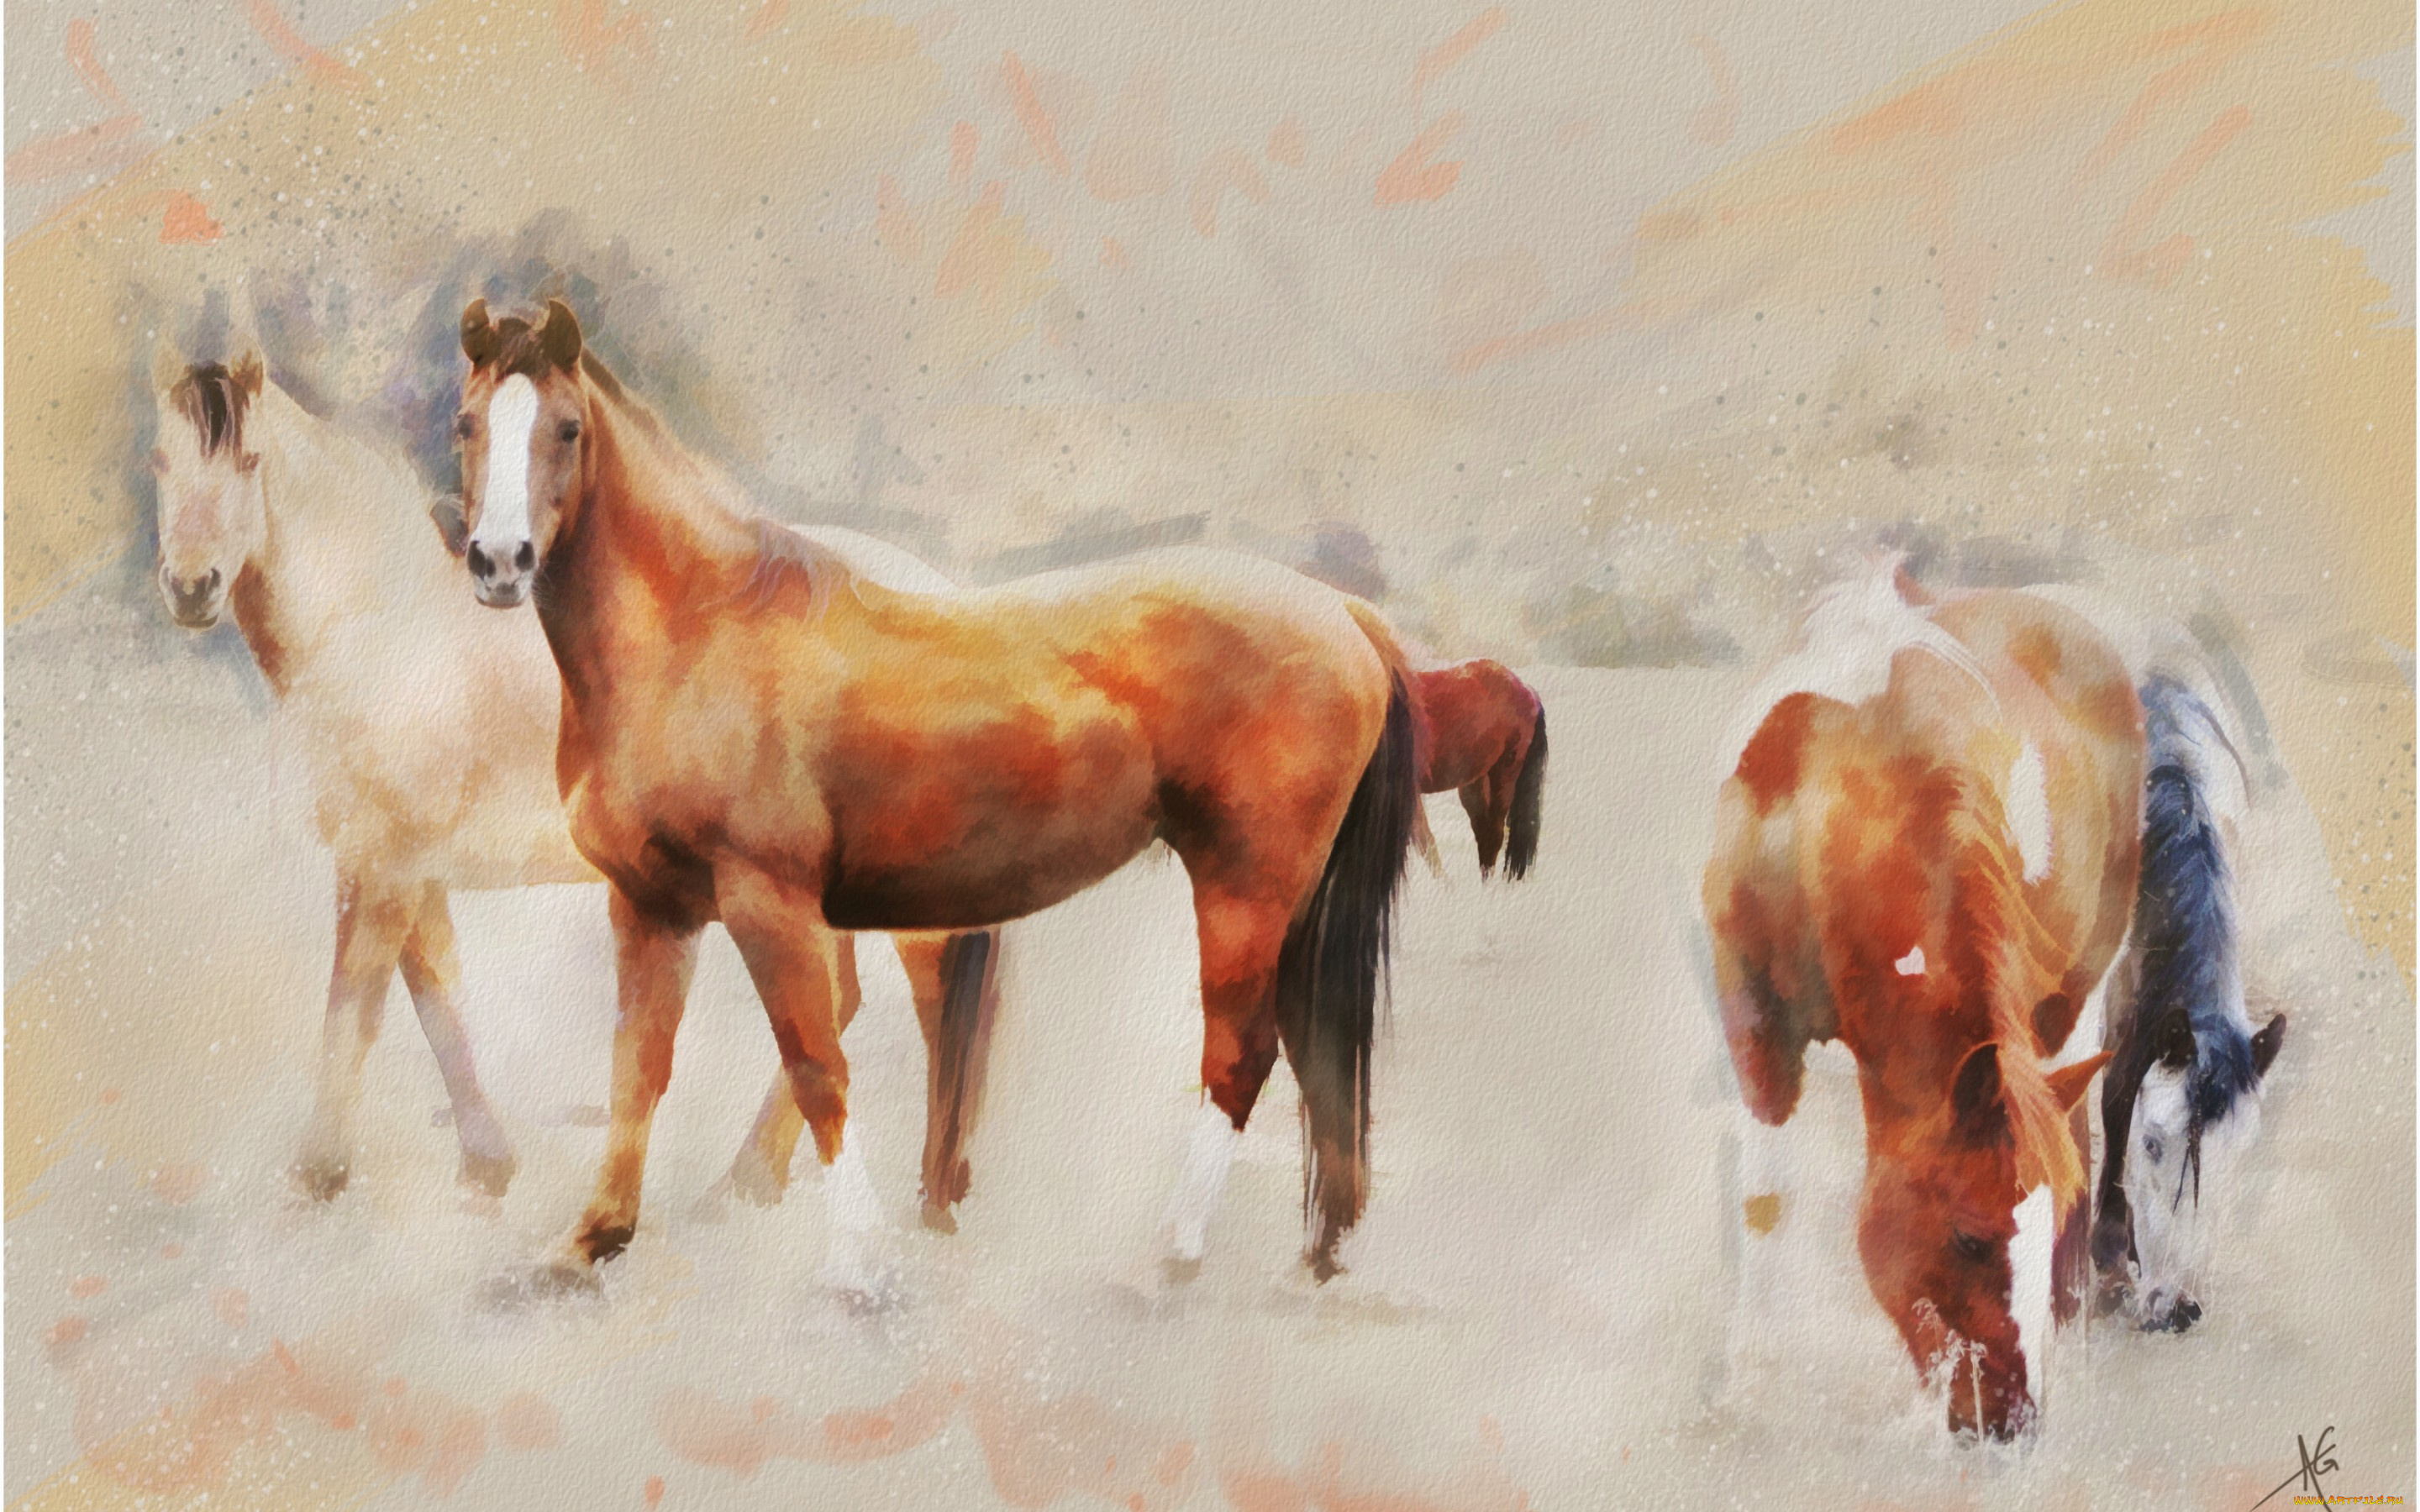 рисованное, животные, , лошади, поле, пасутся, пастельные, тона, кони, лошади, графика, живопись, картина